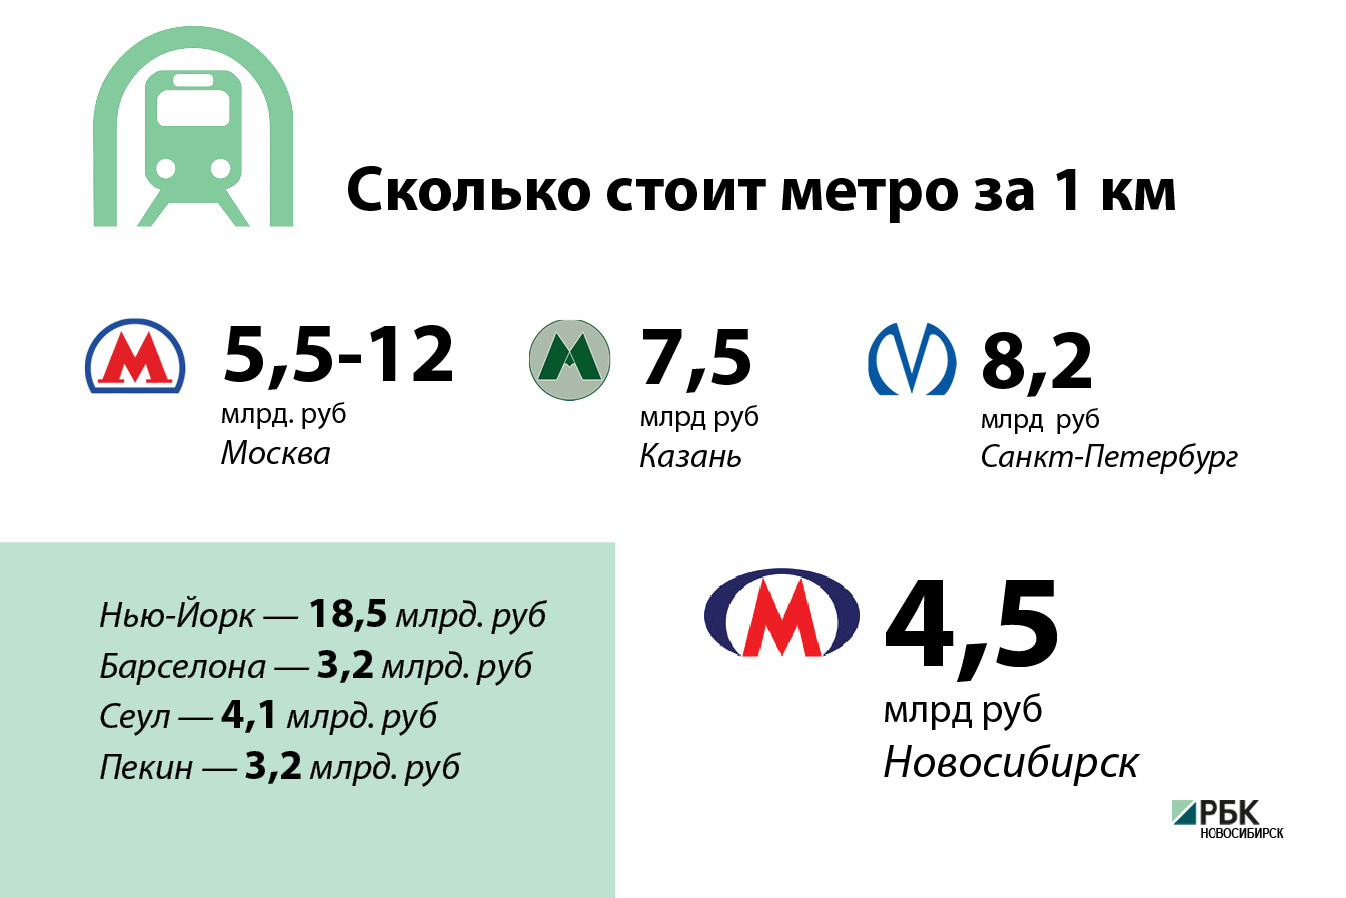 Цена вопроса: сколько стоит строительство новосибирского метро